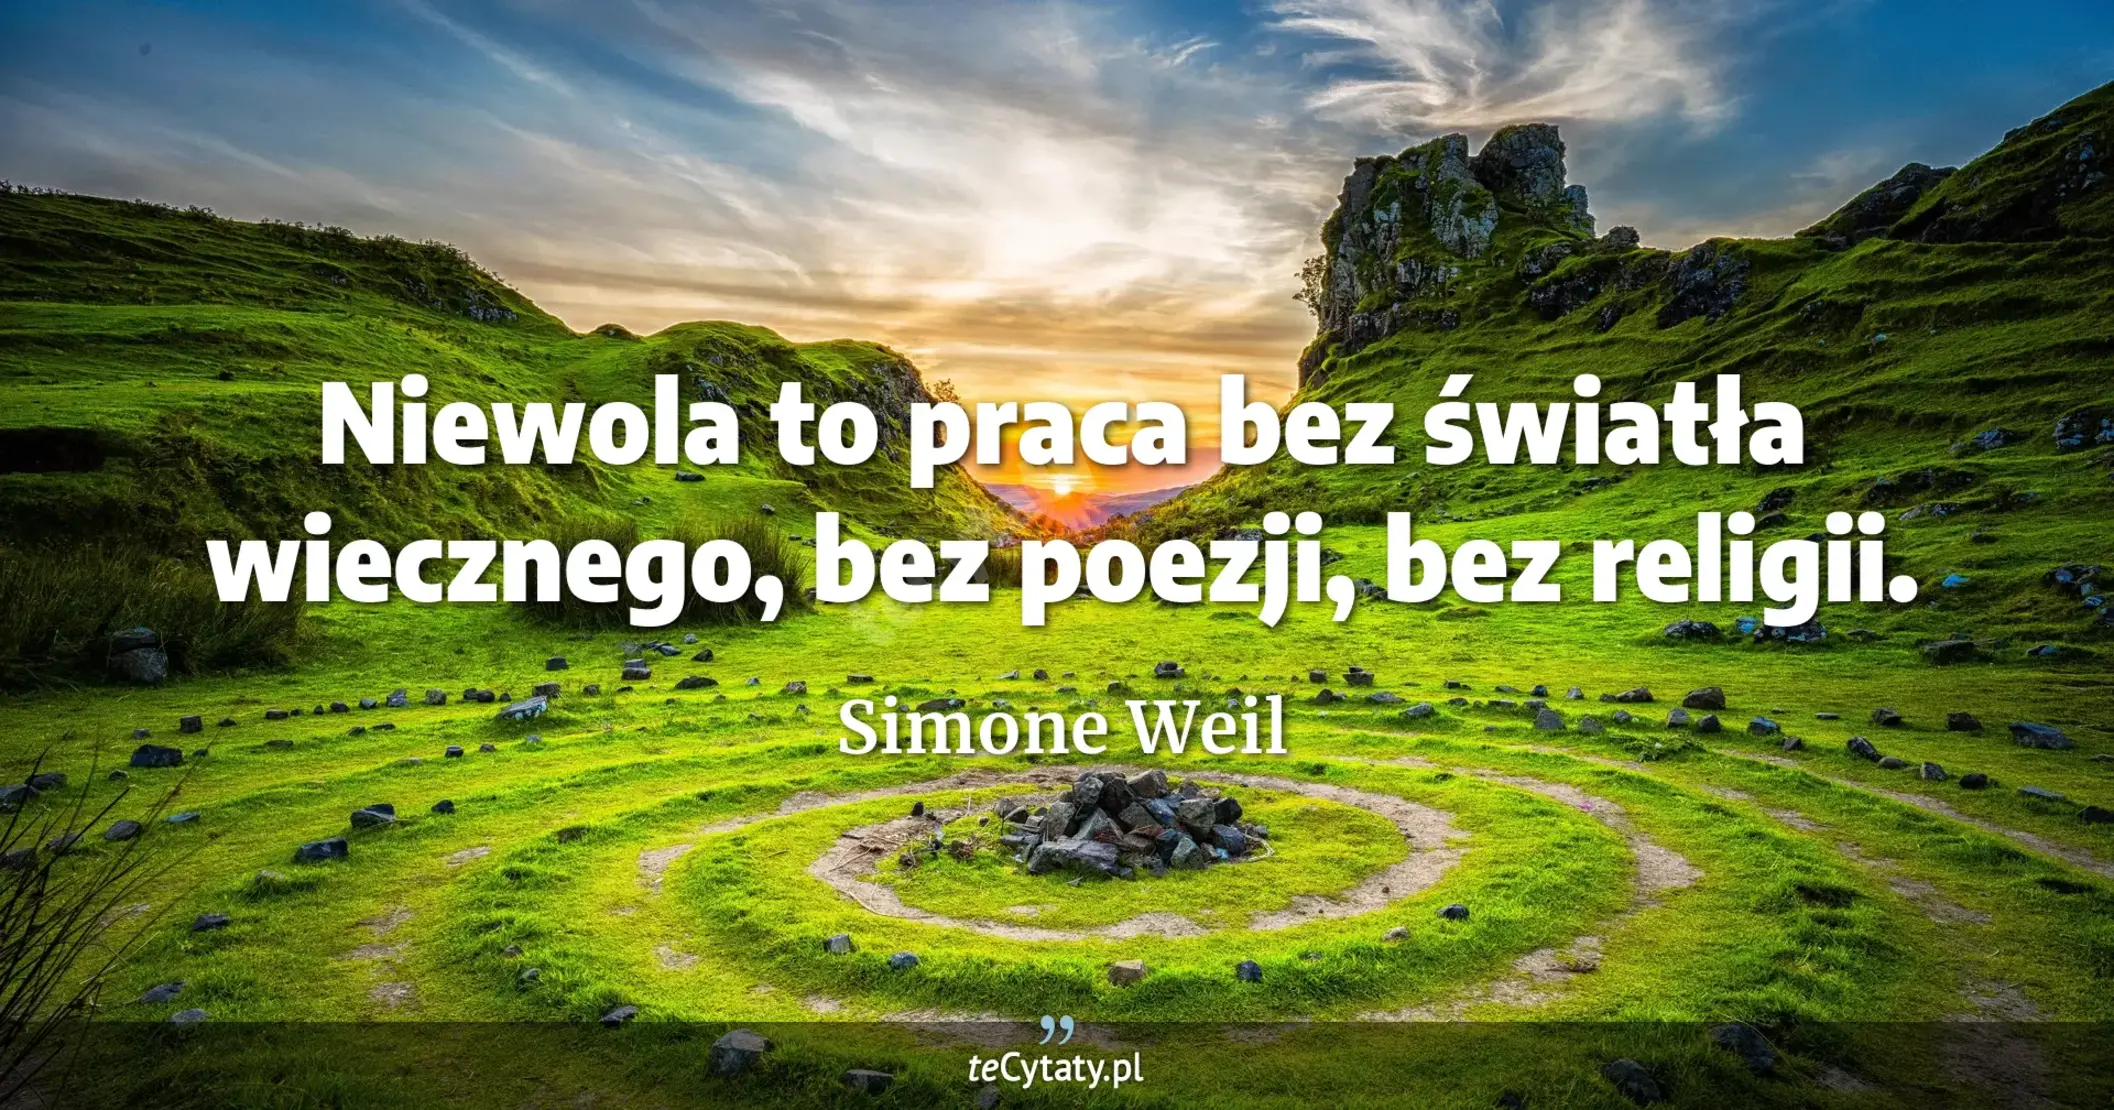 Niewola to praca bez światła wiecznego, bez poezji, bez religii. - Simone Weil